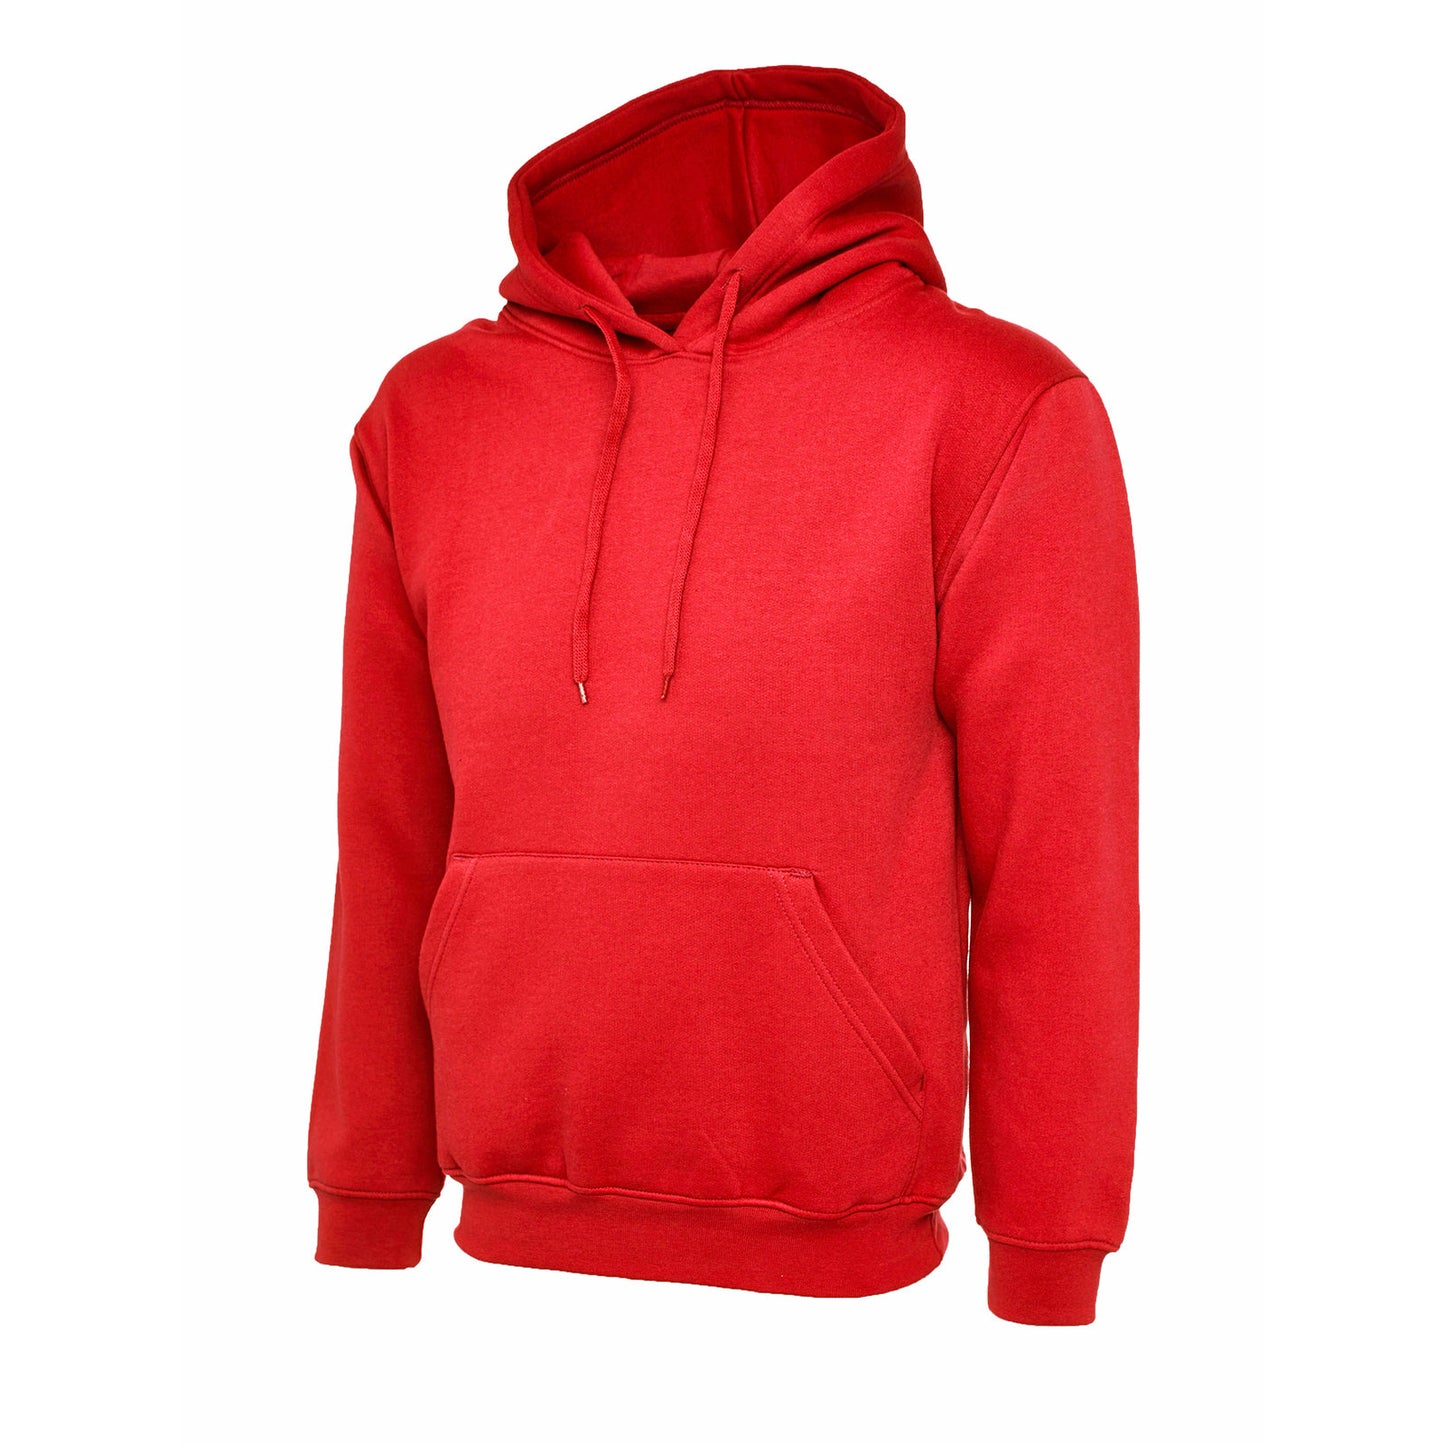 Ladies Deluxe Hooded Sweatshirt Red